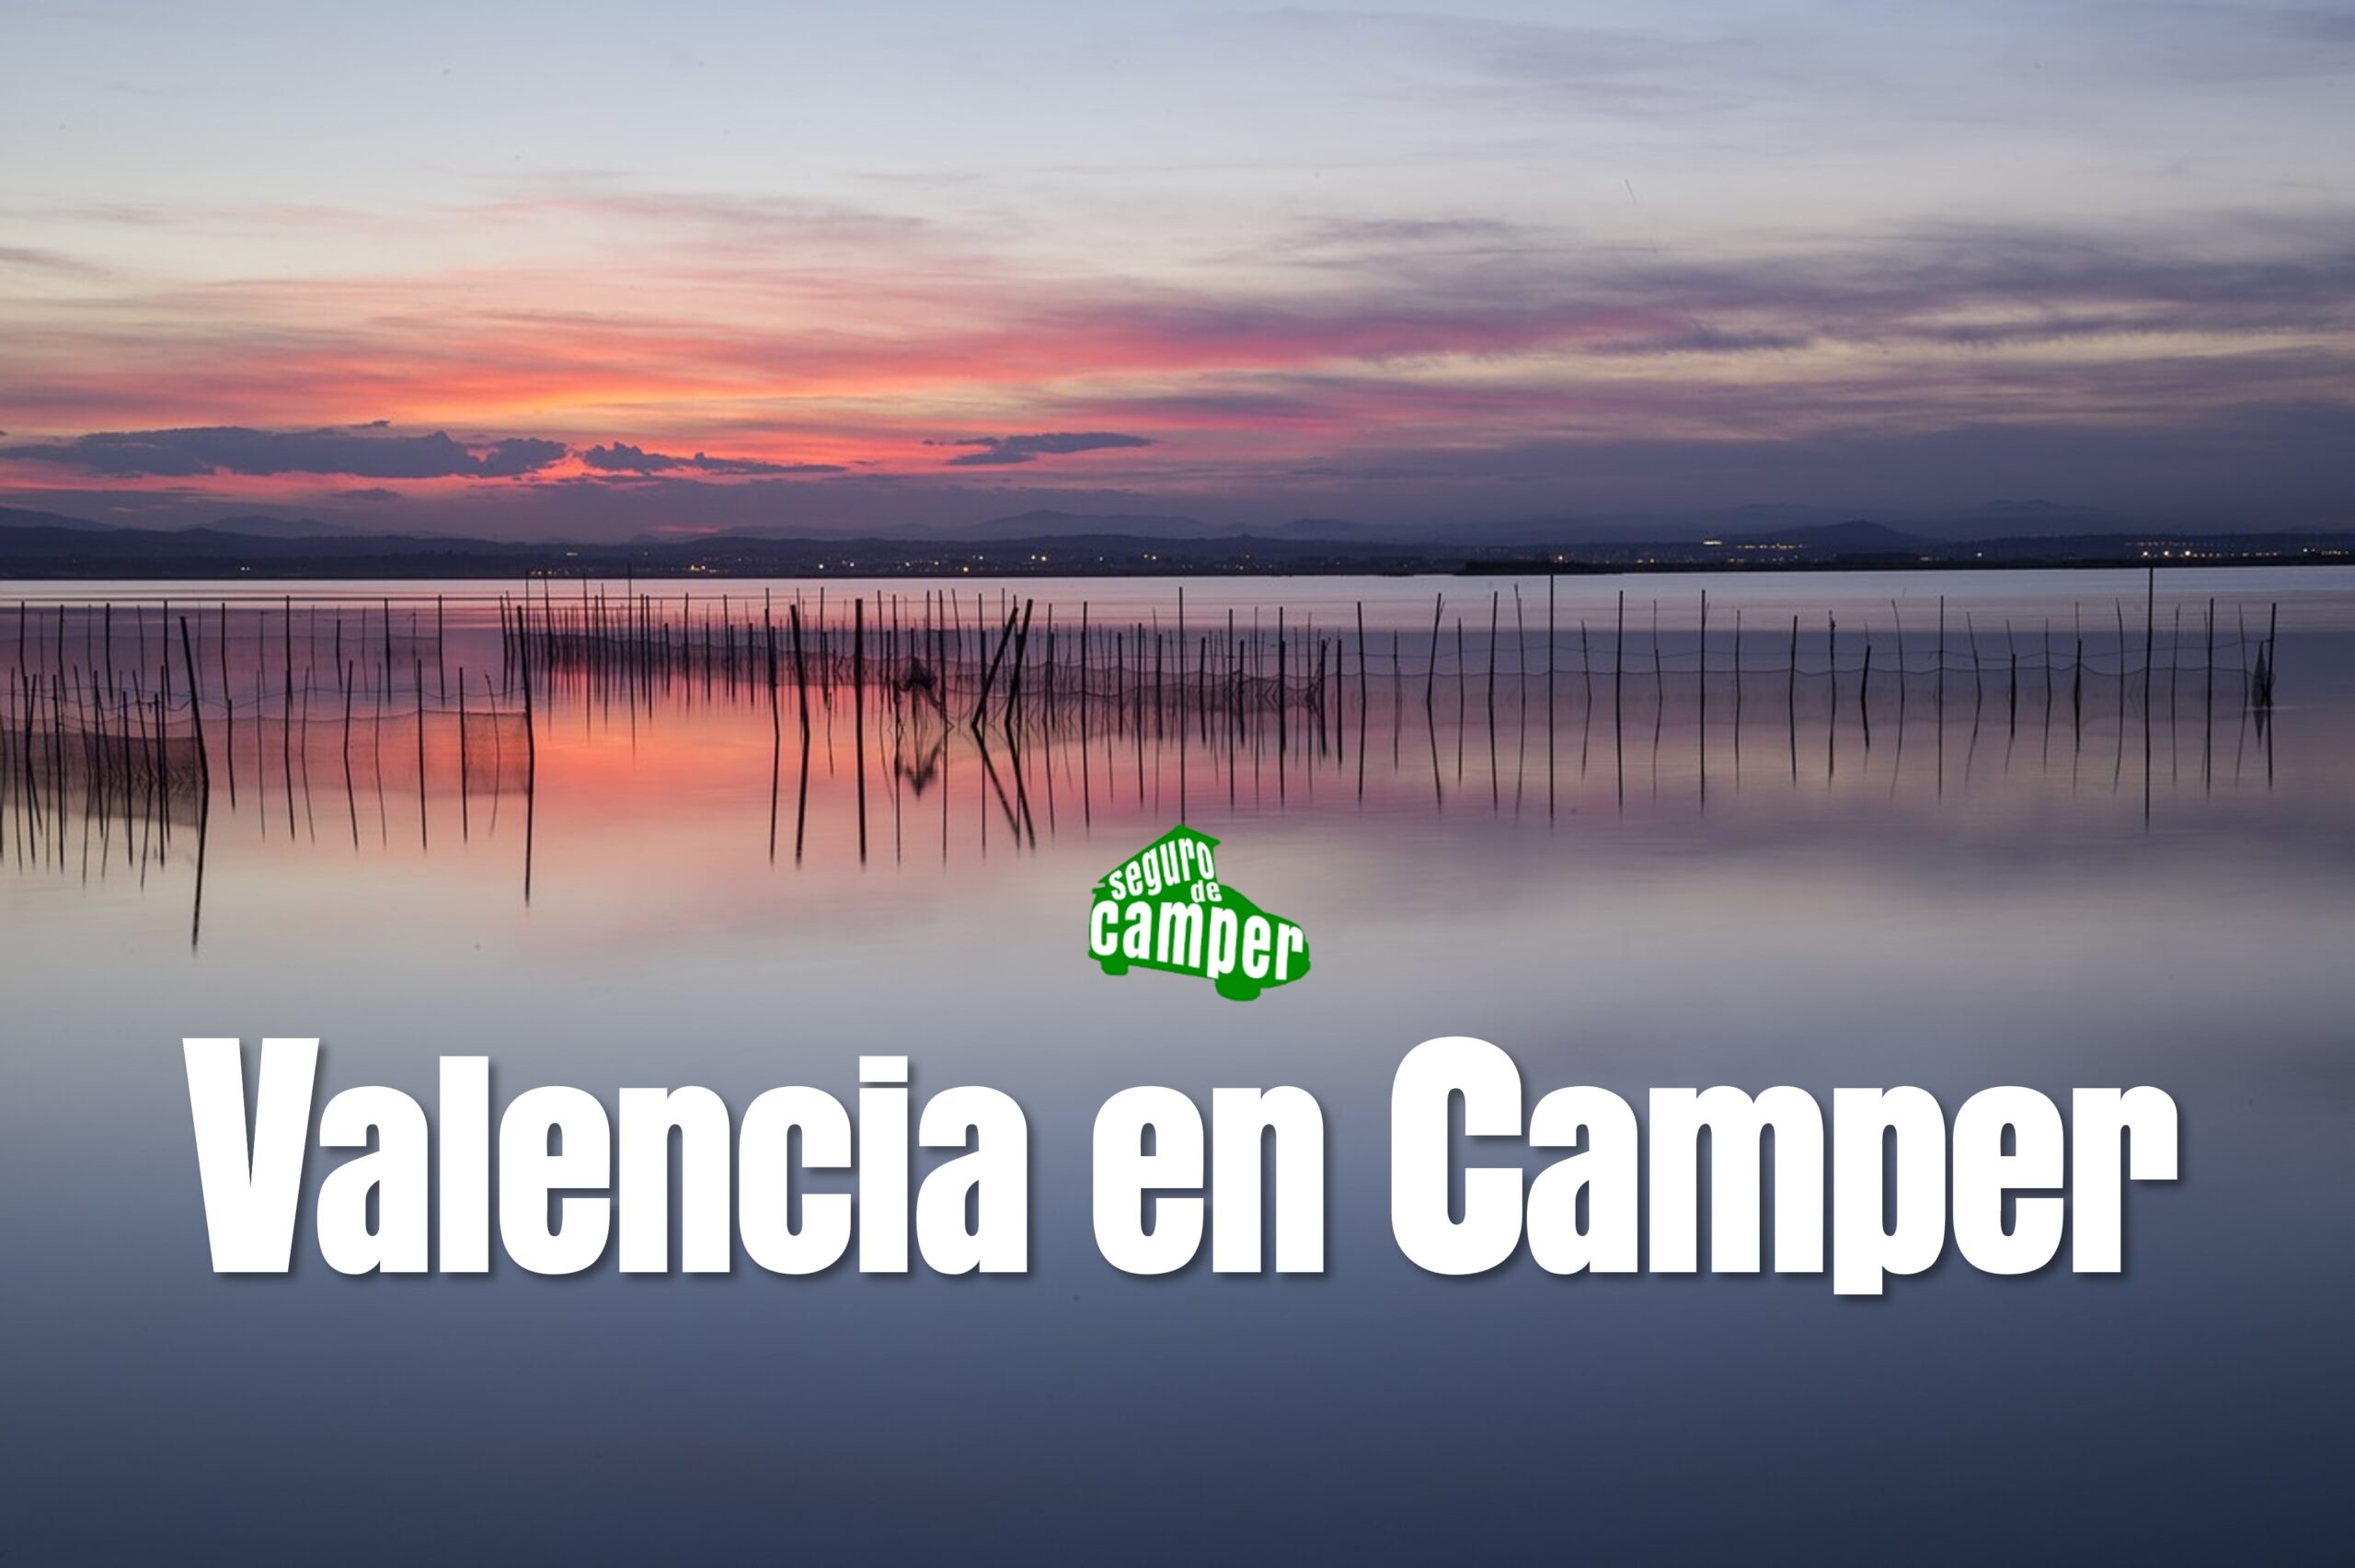 Áreas para autocaravanas y campers en Valencia